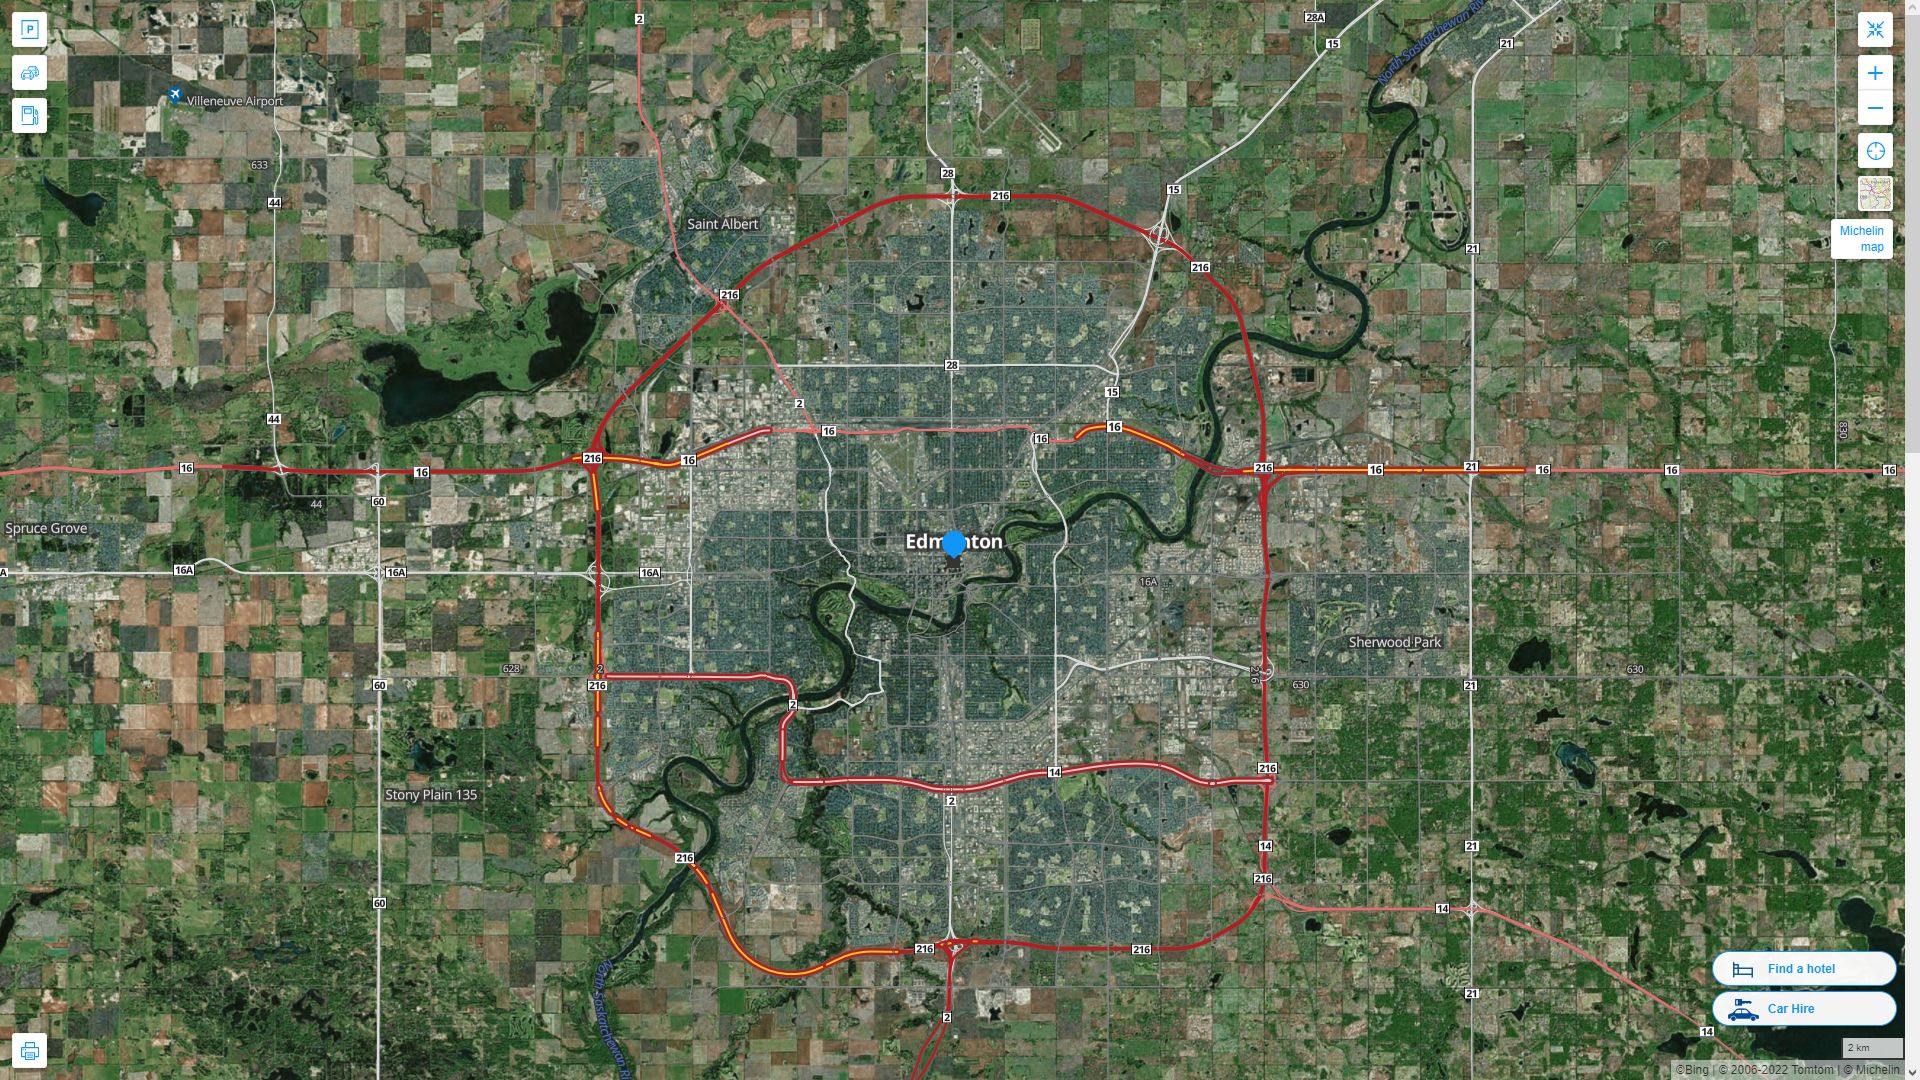 Edmonton Canada Autoroute et carte routiere avec vue satellite